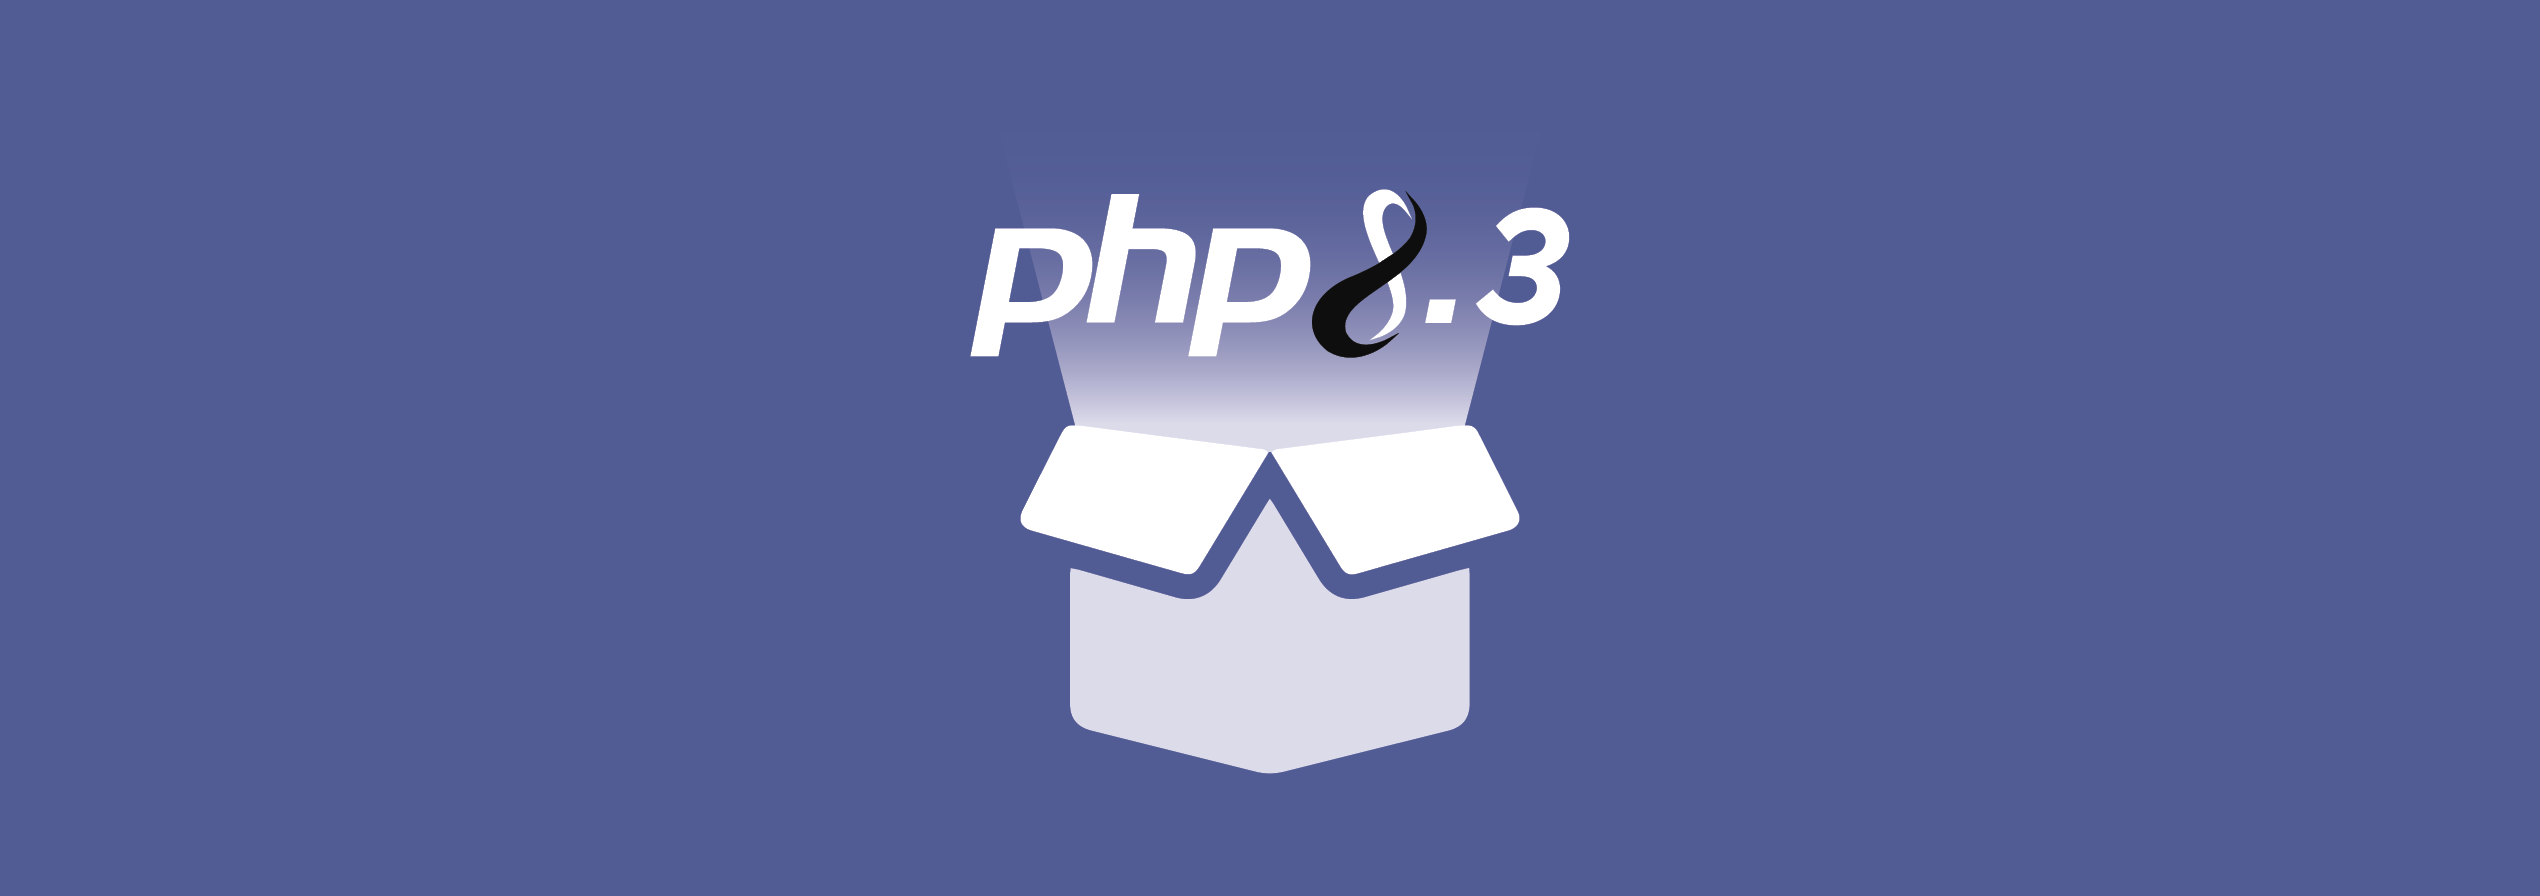 PHP 8.3 jetzt bei hosting.de verfügbar